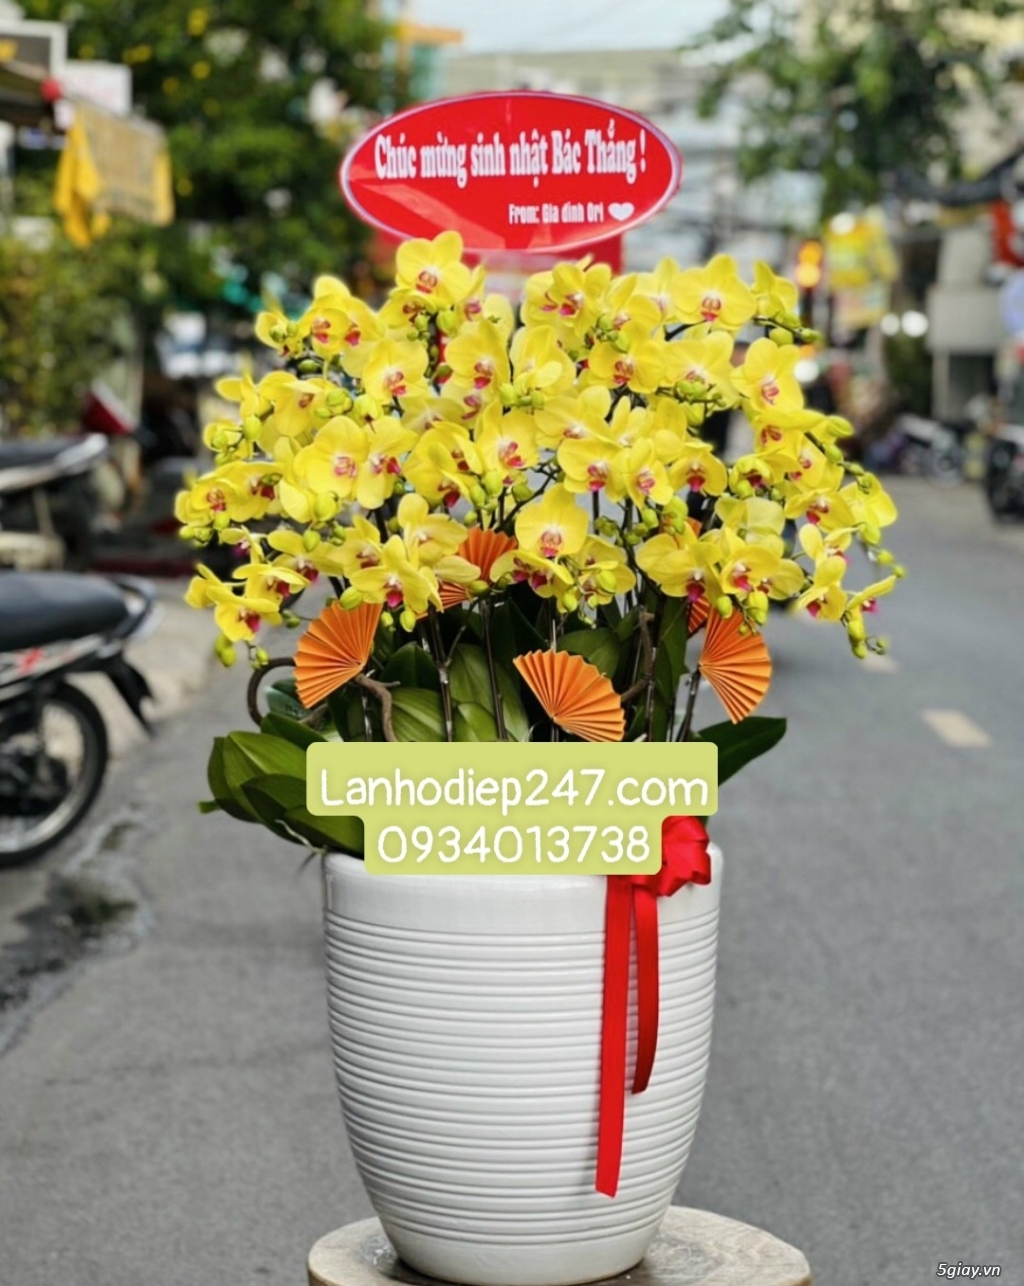 Shop hoa tươi Lan Hồ điệp 247 tại Đắc Lắk 0934013738 - 11